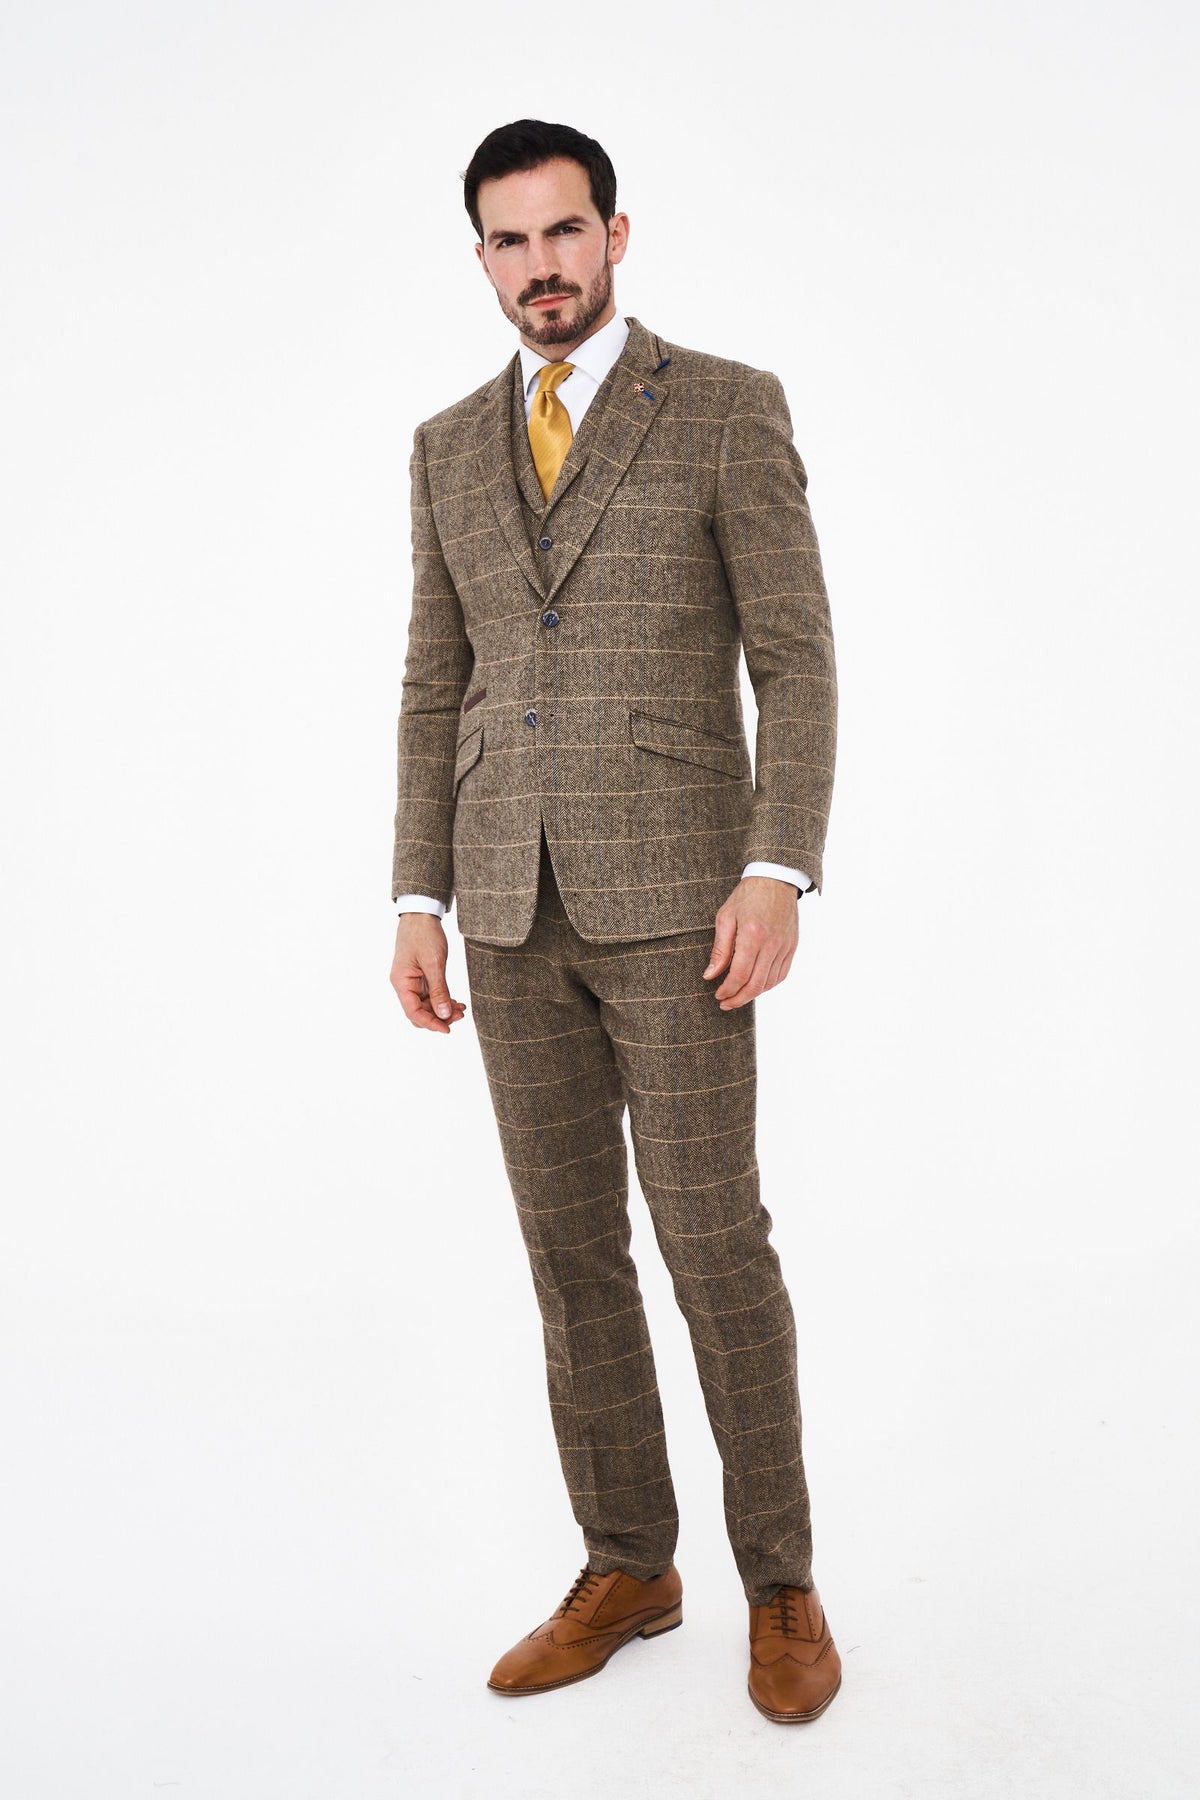 House of Cavani Albert Brown Tweed Three Piece Suit